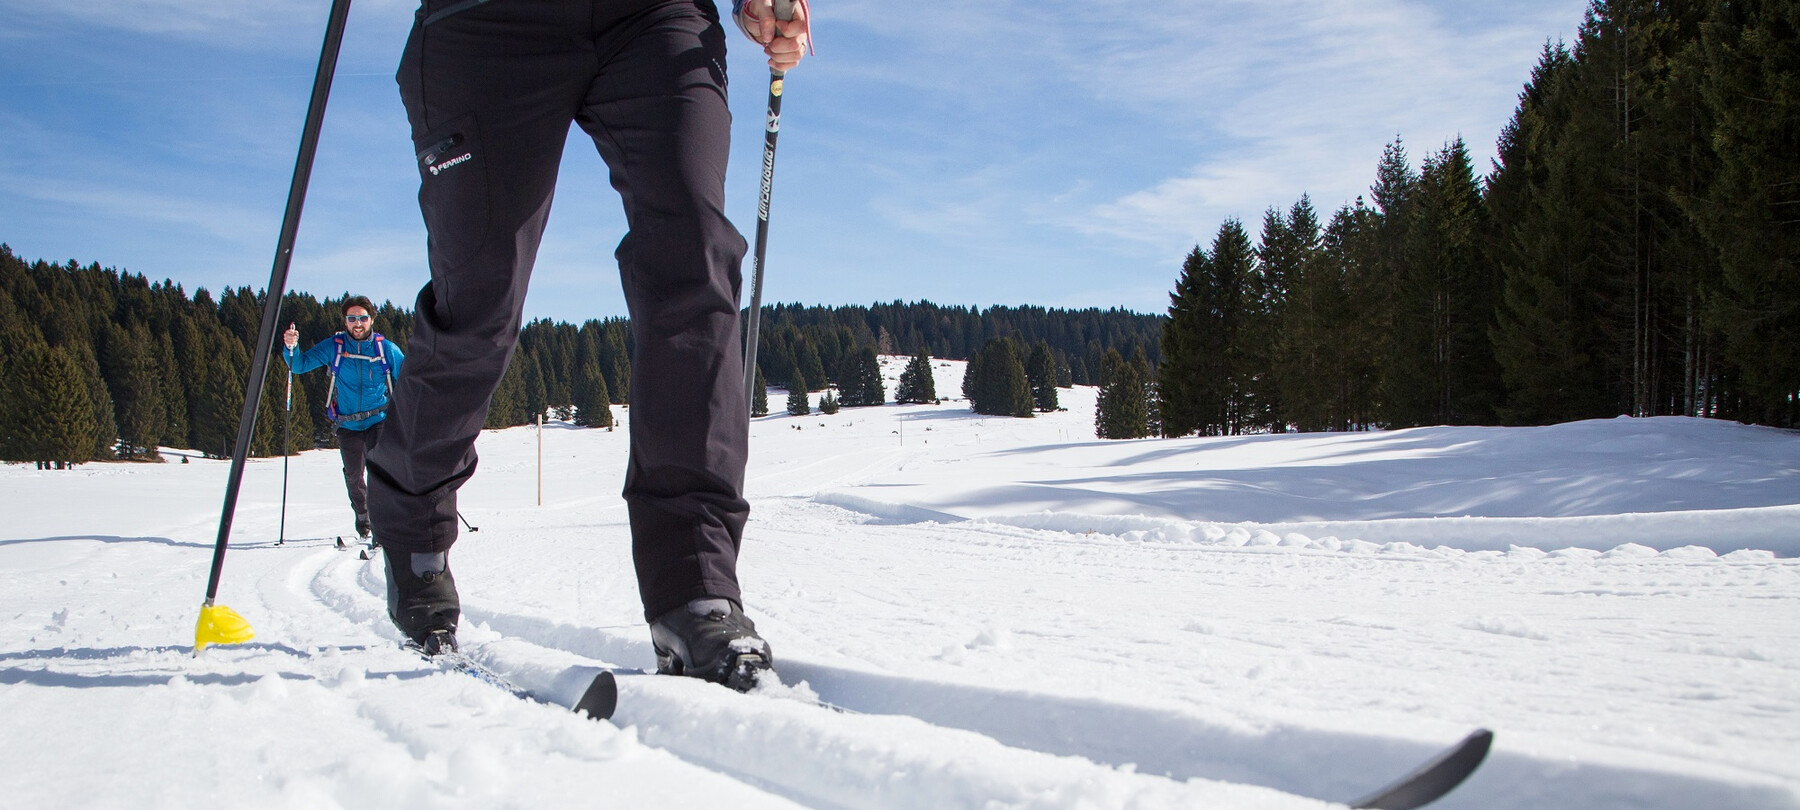 5 советов о том, как начать кататься на беговых лыжах